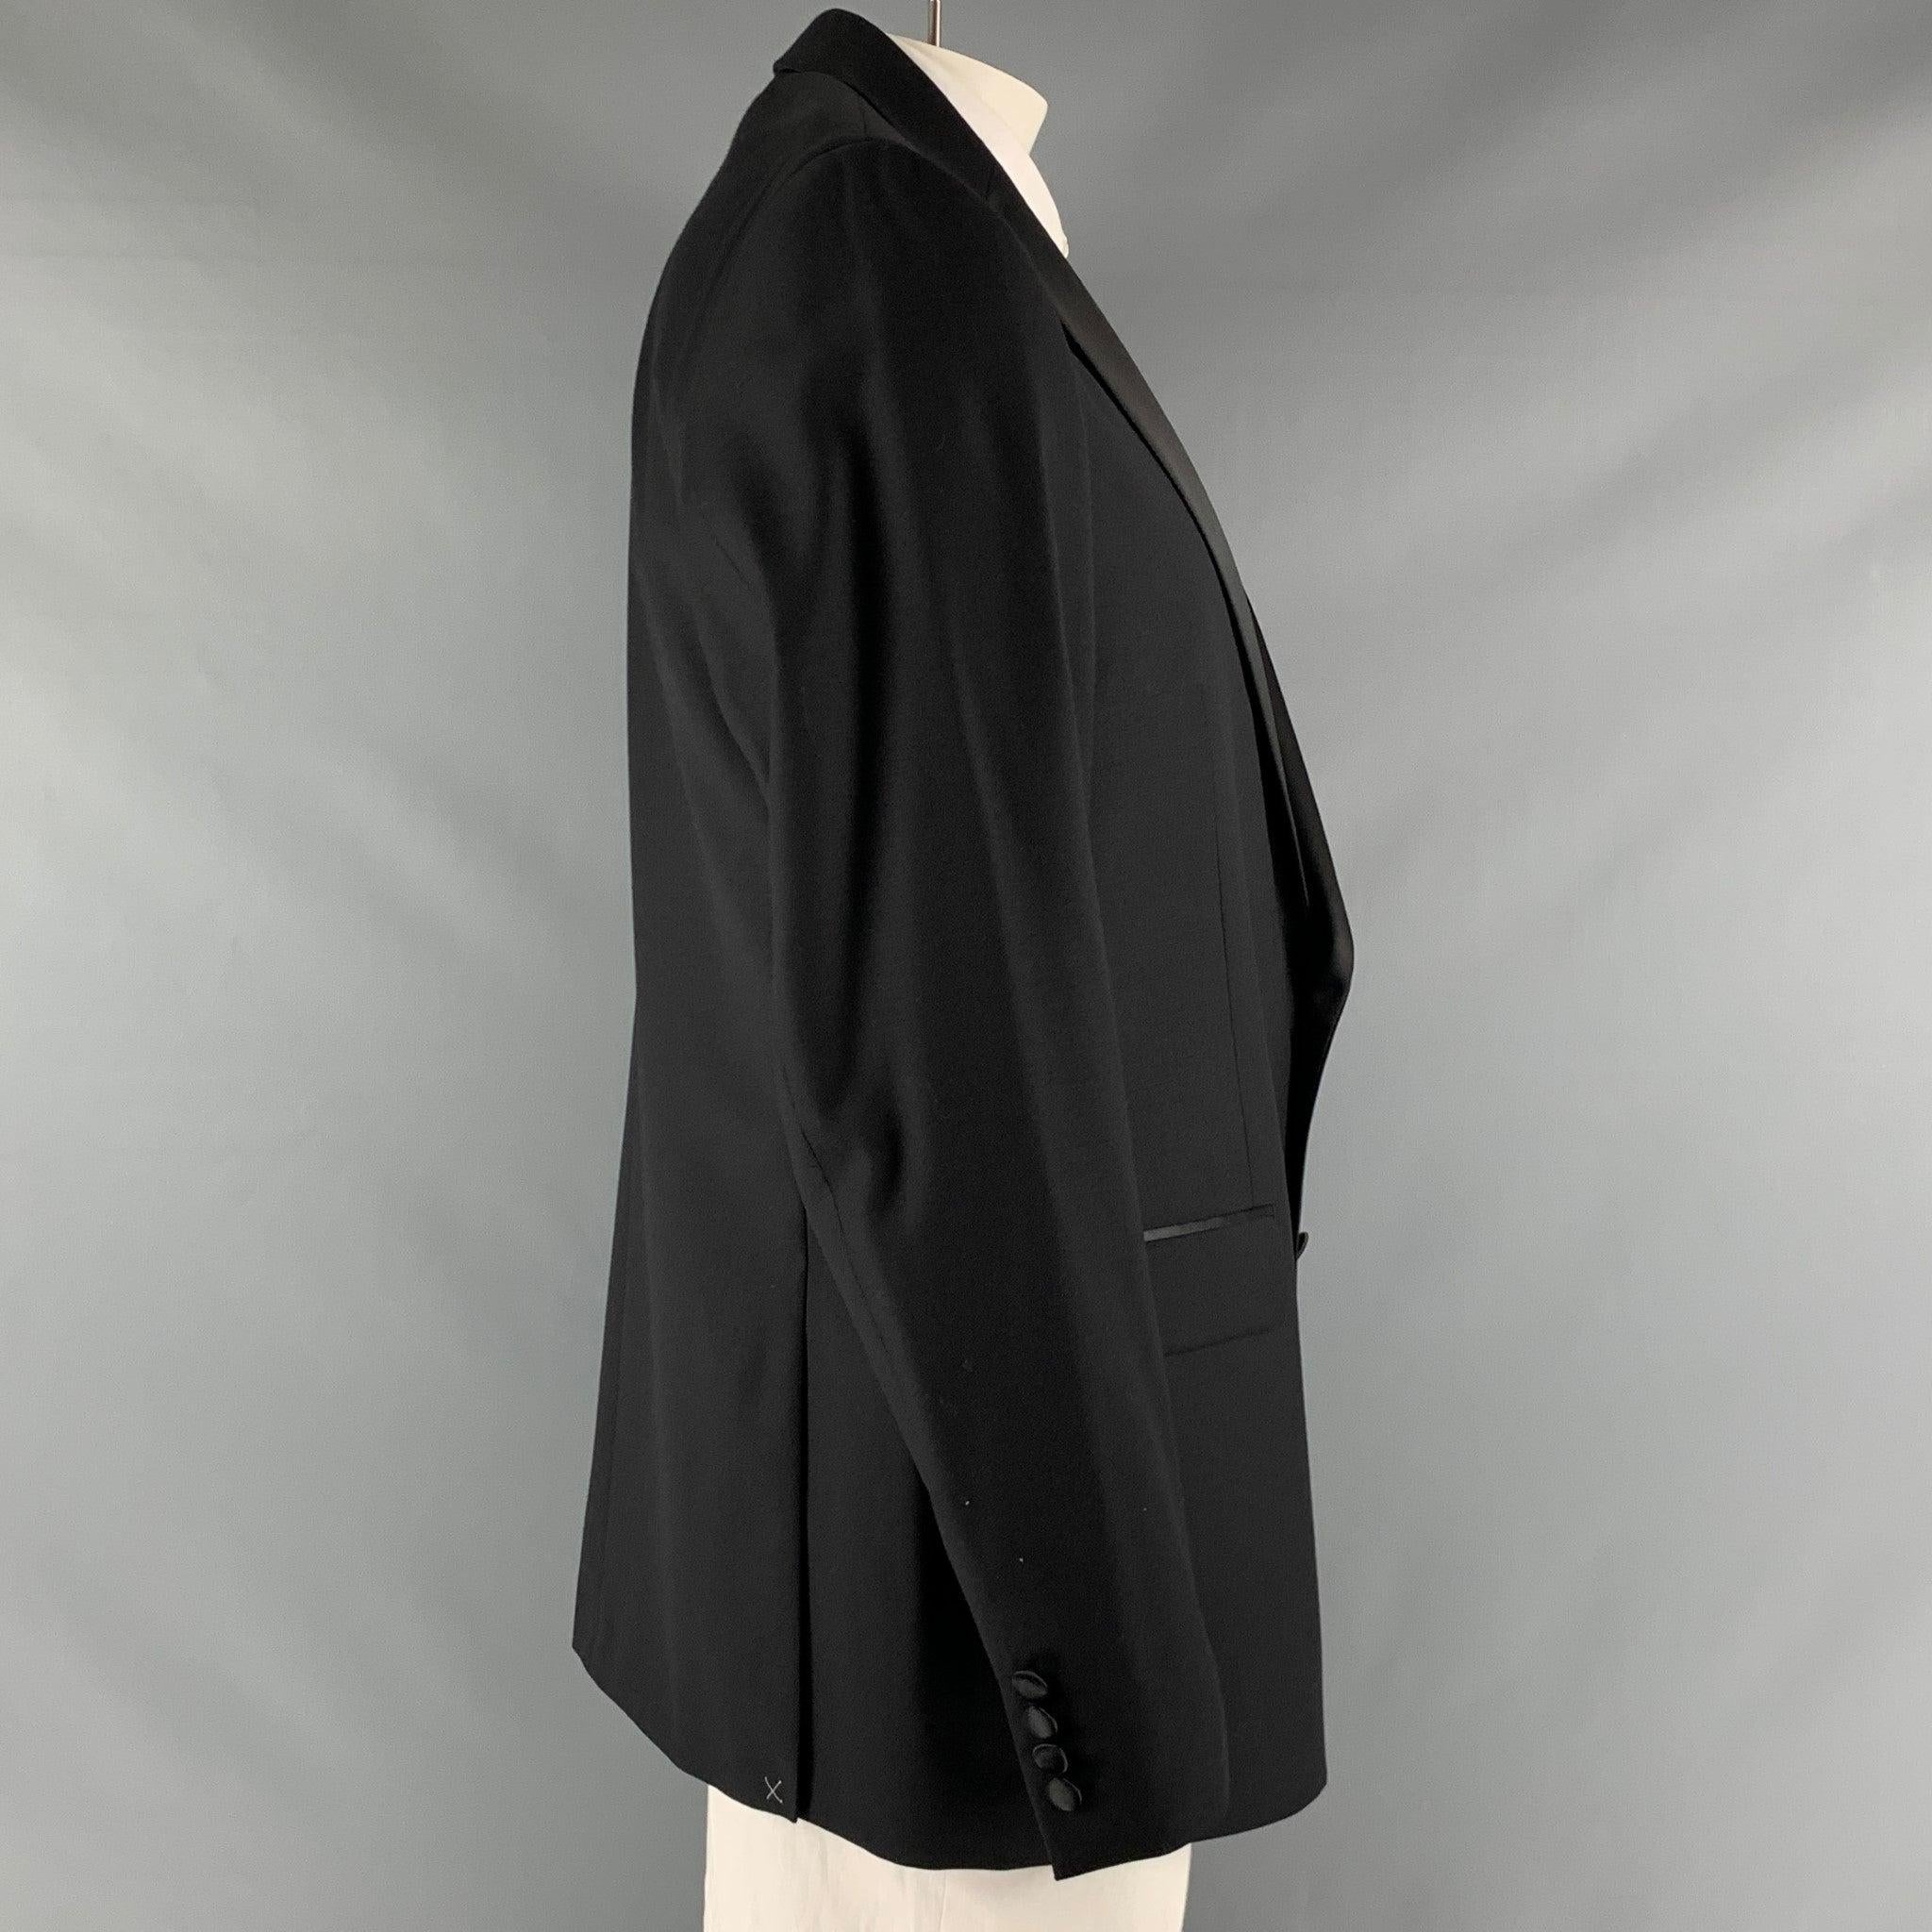 Manteau de sport CALVIN KLEIN x SLIM FIT en laine extensible noire avec doublure complète, simple boutonnage, revers échancré et double fente au dos. Nouveau avec étiquettes. 

Marqué :   46 L 

Mesures : 
 
Épaule : 18 pouces Poitrine : 46 pouces